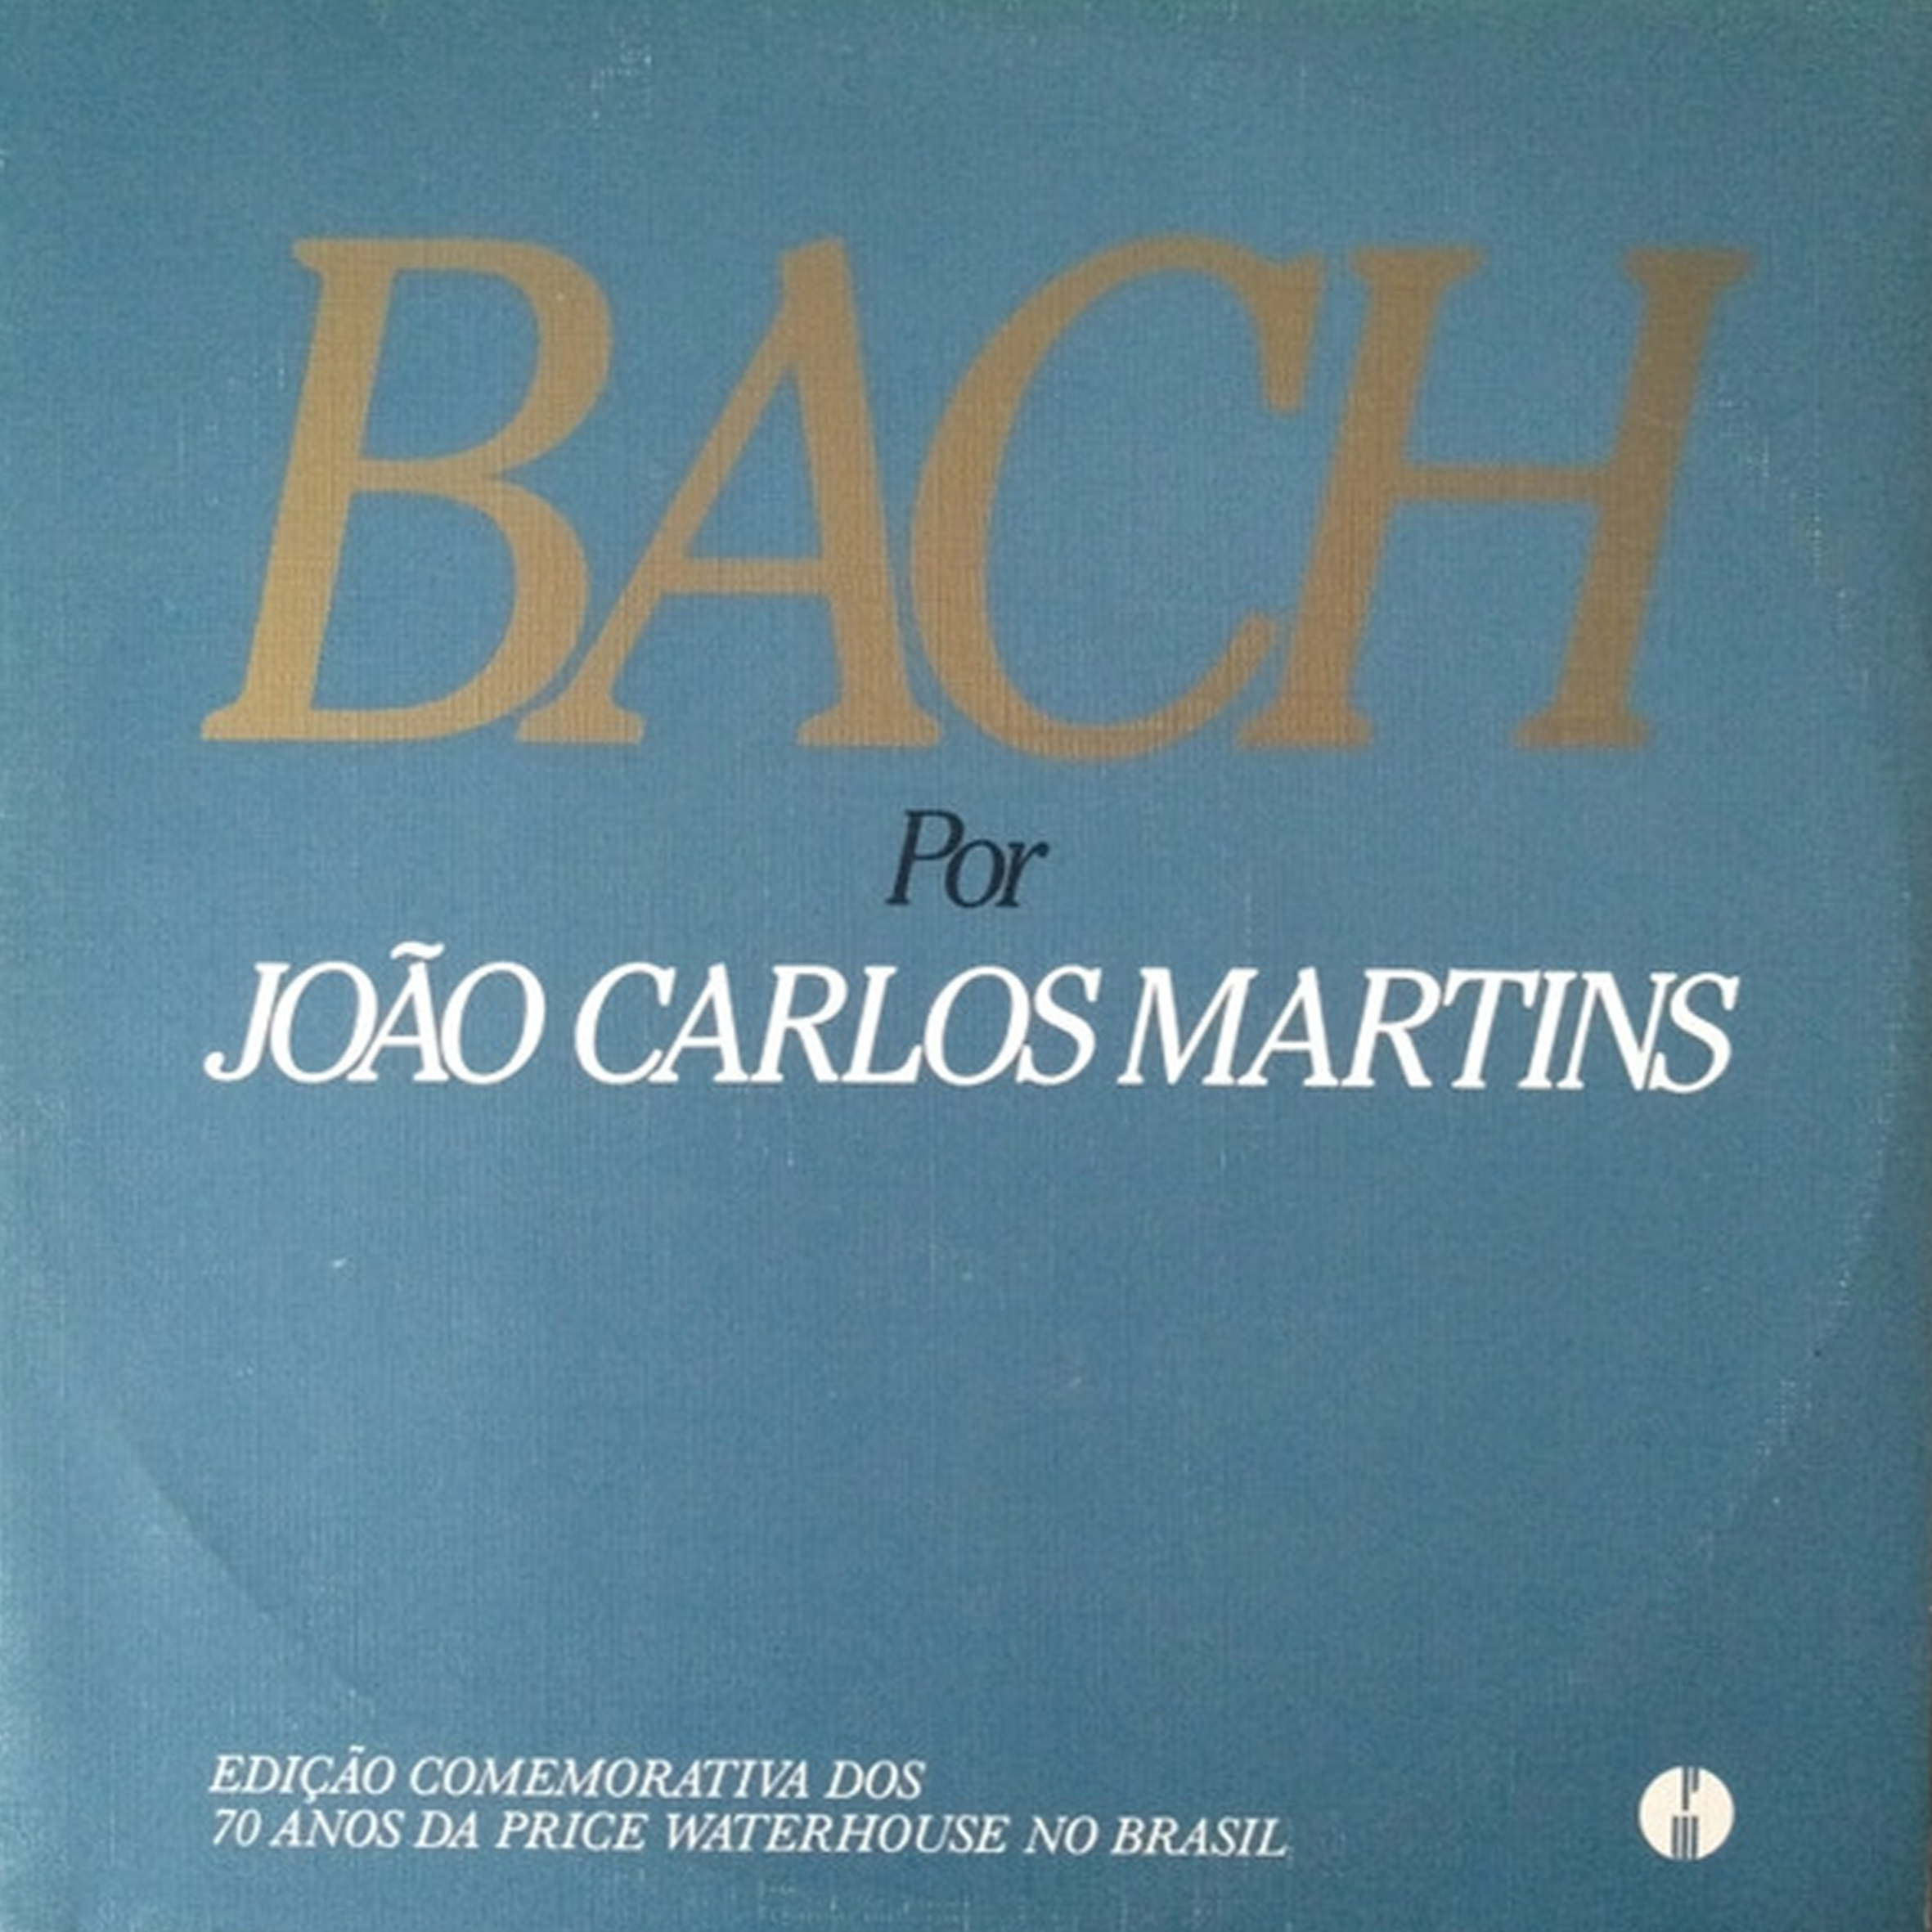 Vinil - Joao Carlos Martins - Bach Por (duplo)